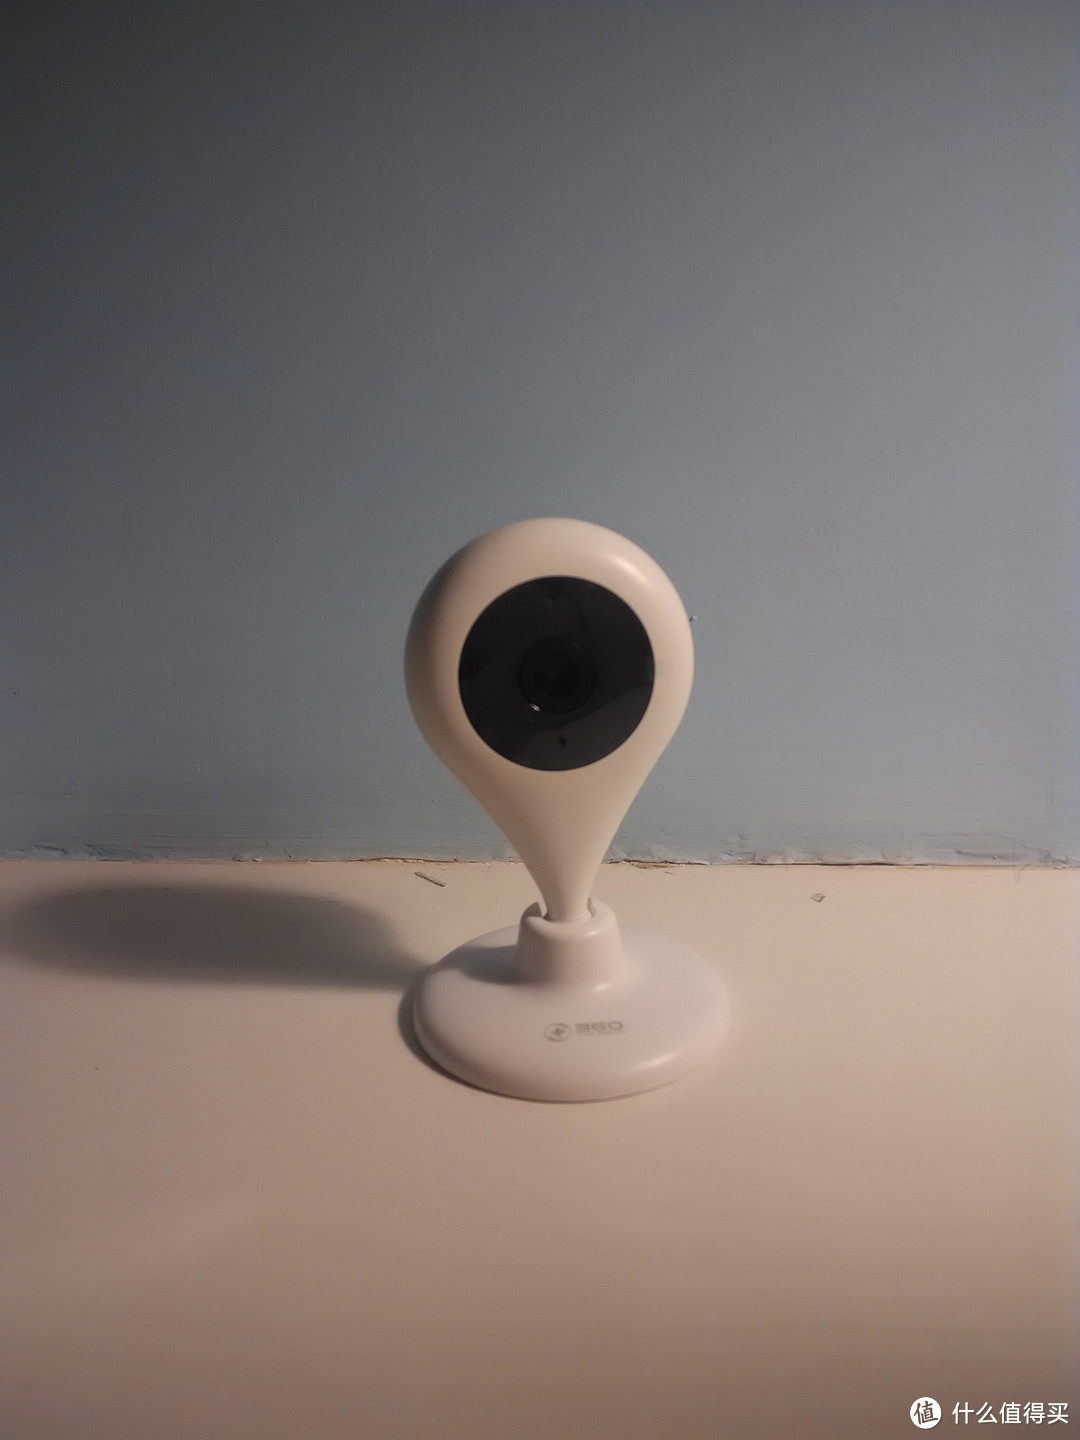 我的无线视频对讲机——360智能摄像机评测